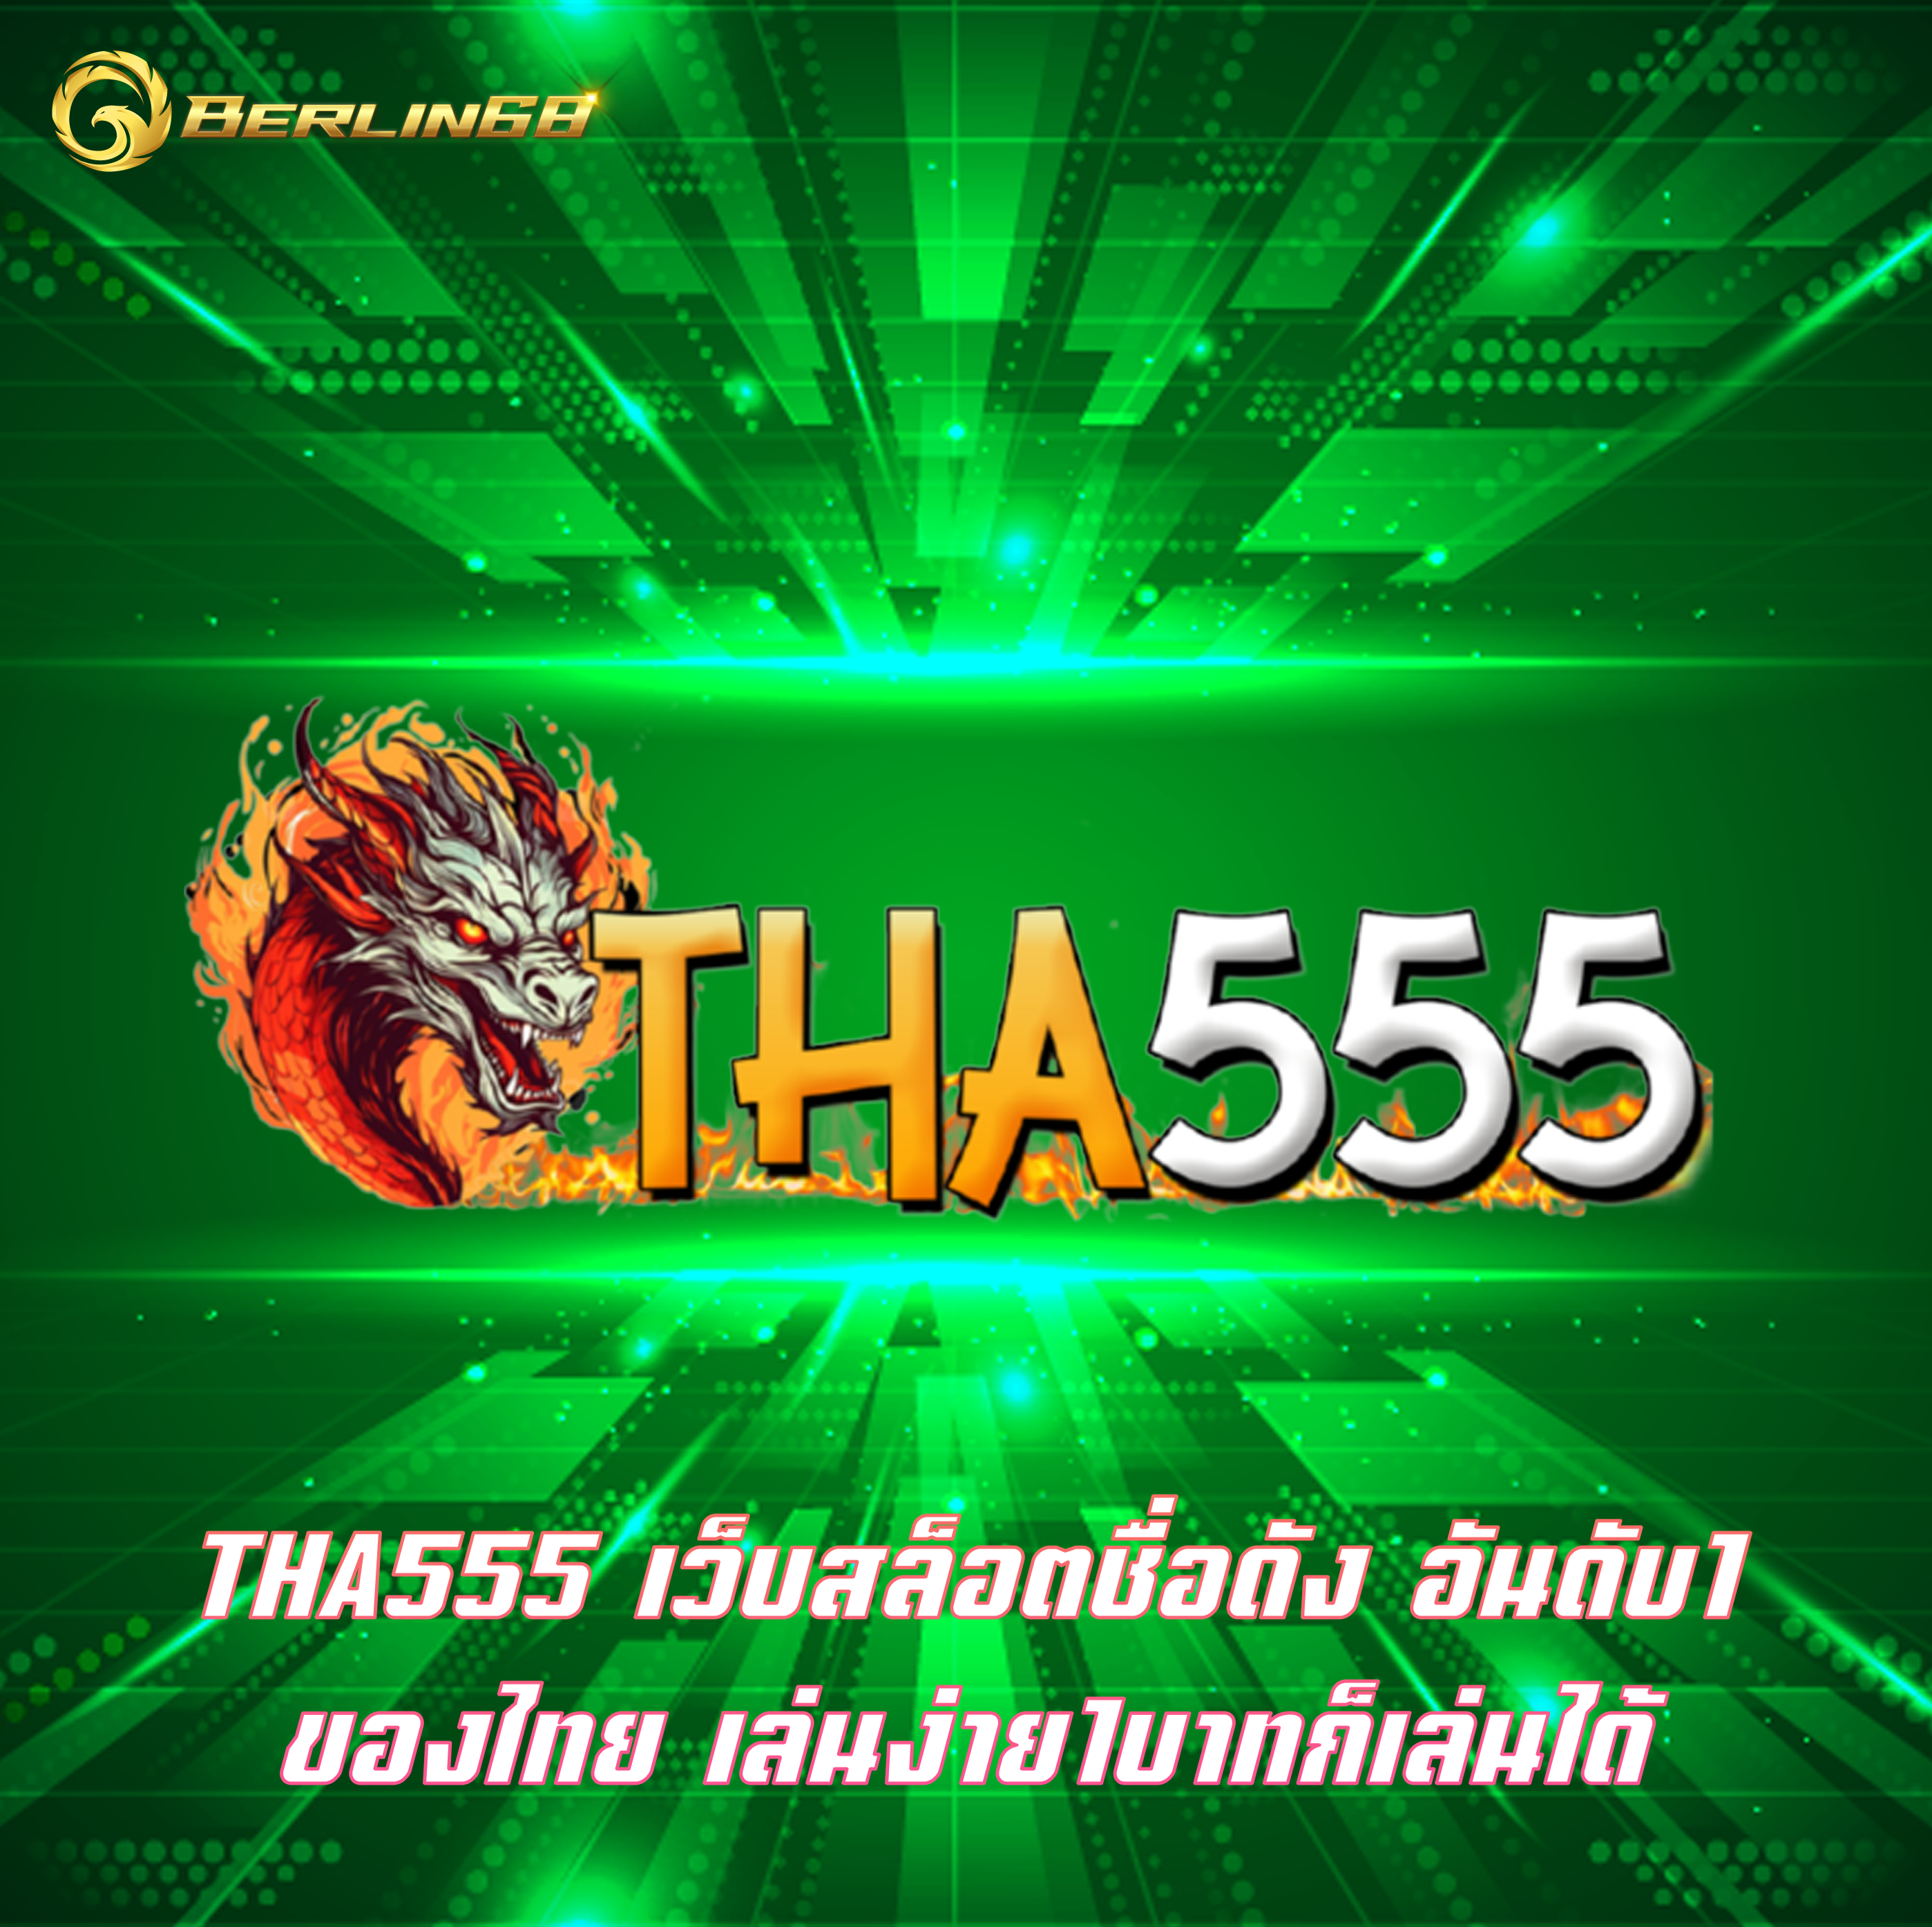 THA555 เว็บสล็อตชื่อดัง อันดับ1ของไทย เล่นง่าย1บาทก็เล่นได้